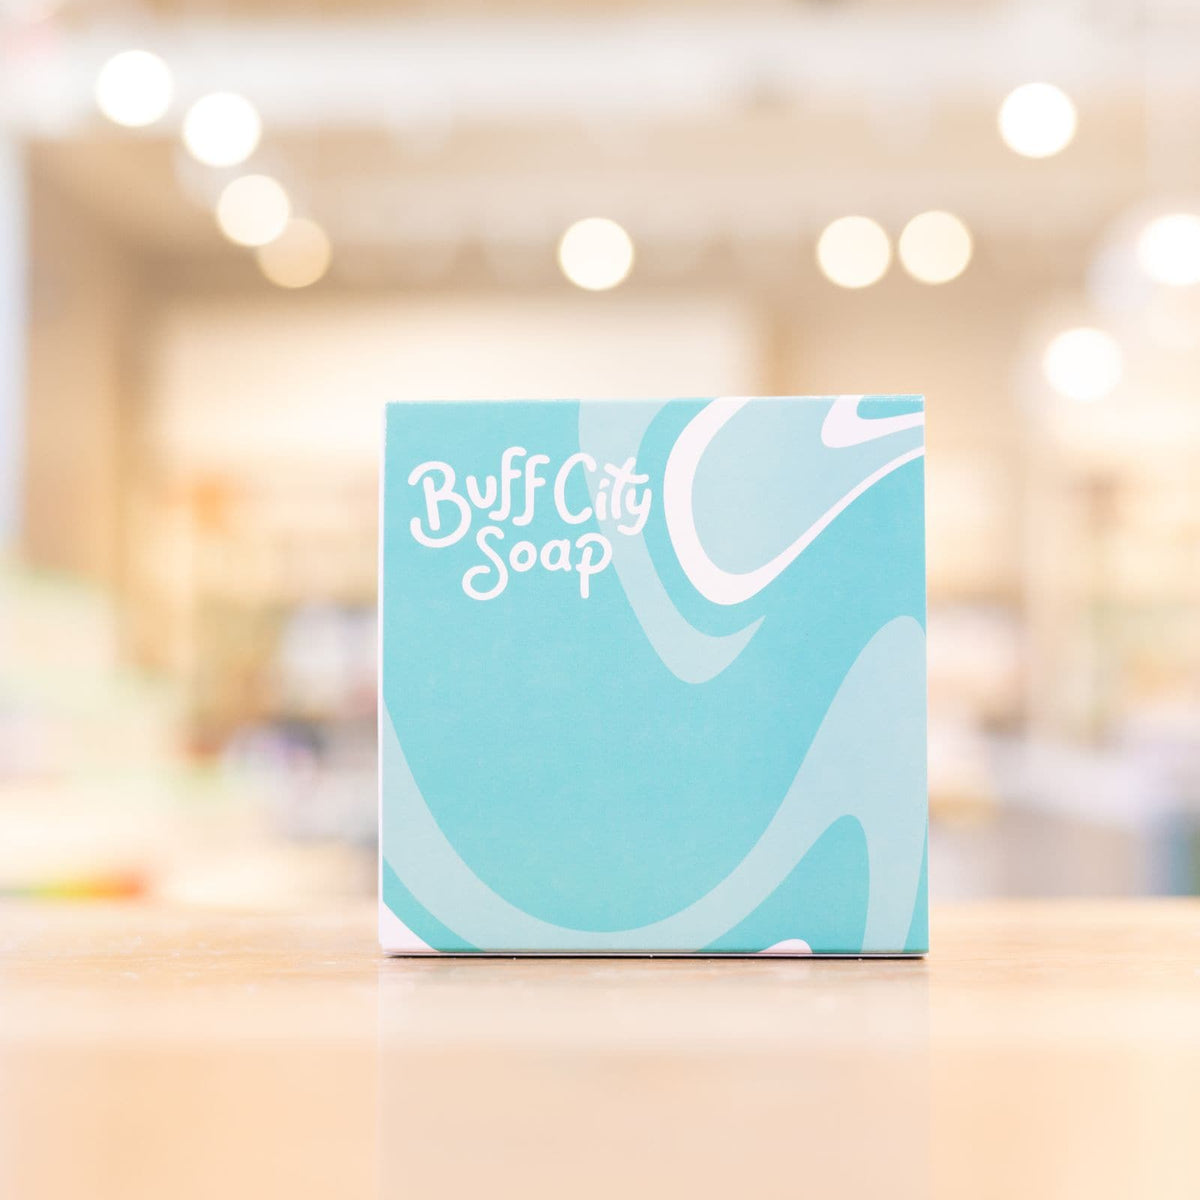 Oatmeal + Honey Shea Butter Soap – Buff City Soap